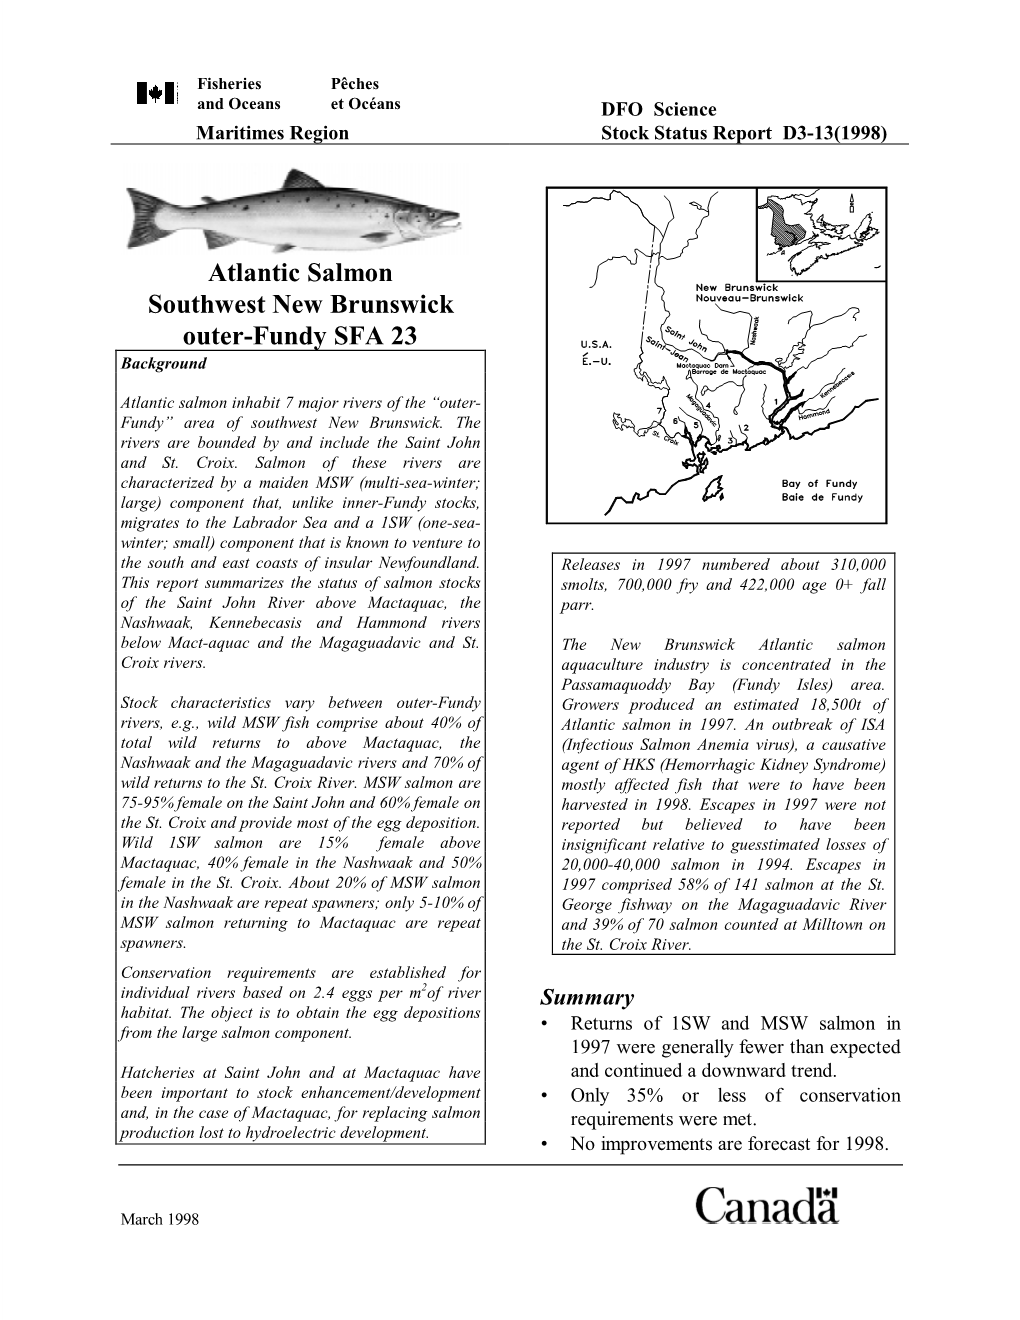 Atlantic Salmon SFA 23